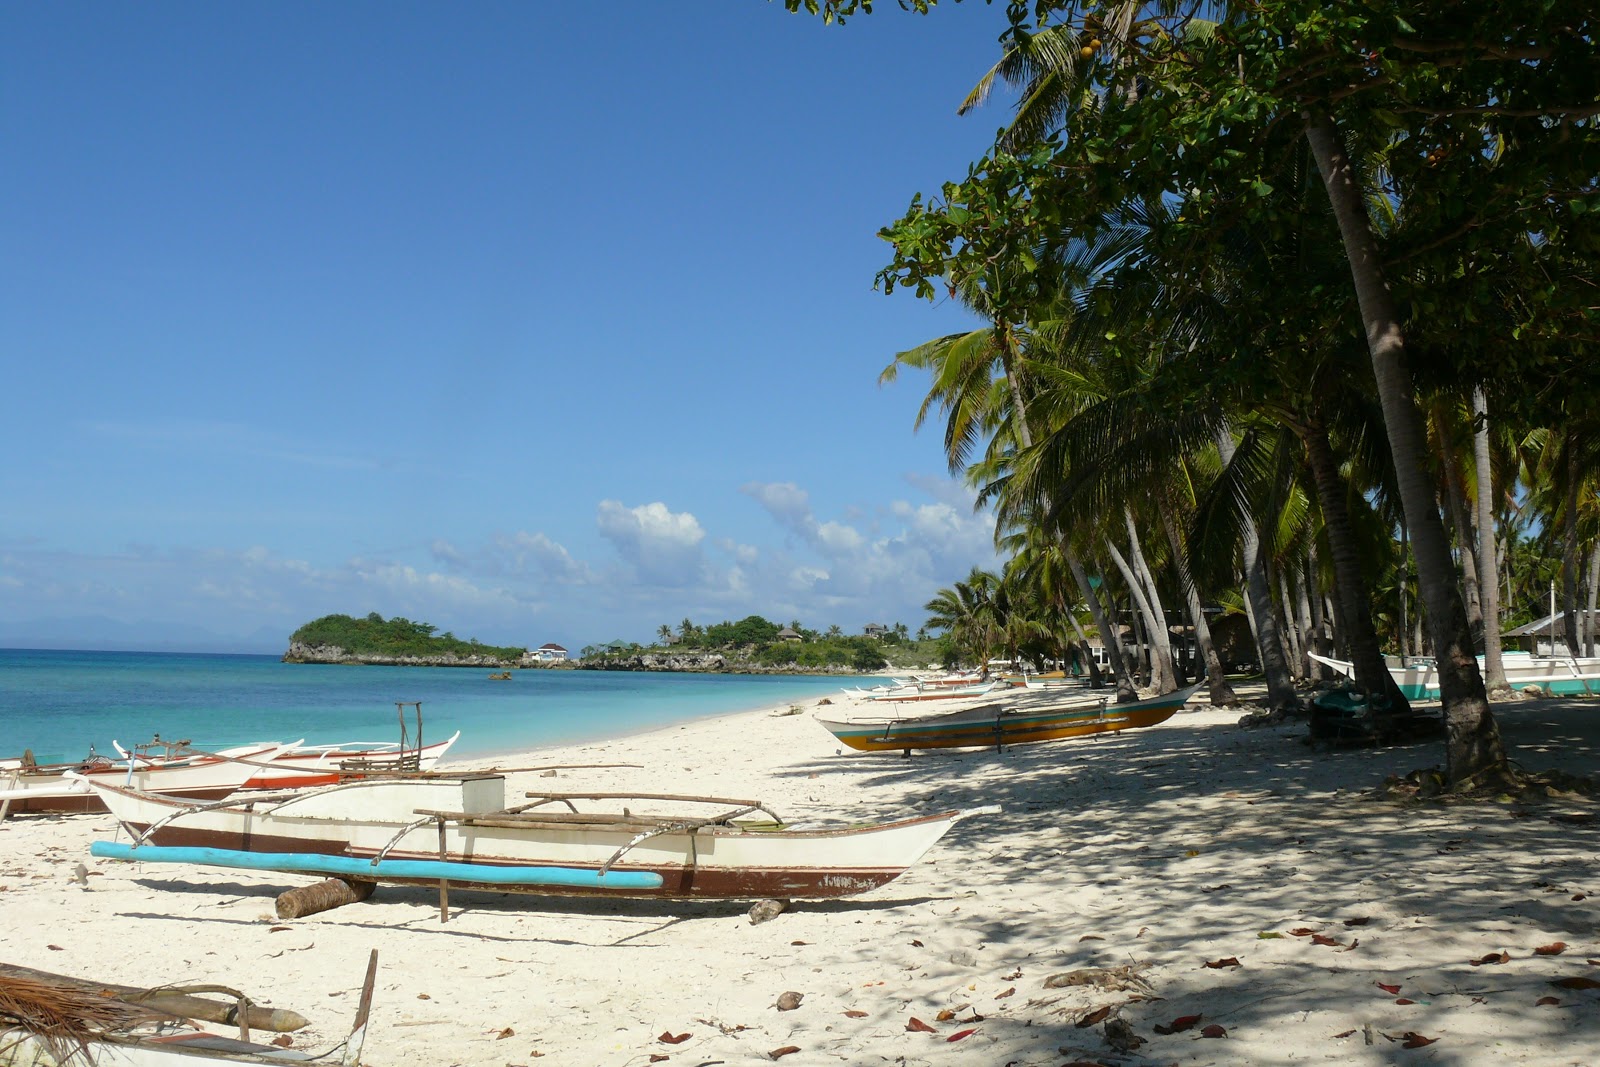 Foto af Malapascua Island Beach - populært sted blandt afslapningskendere